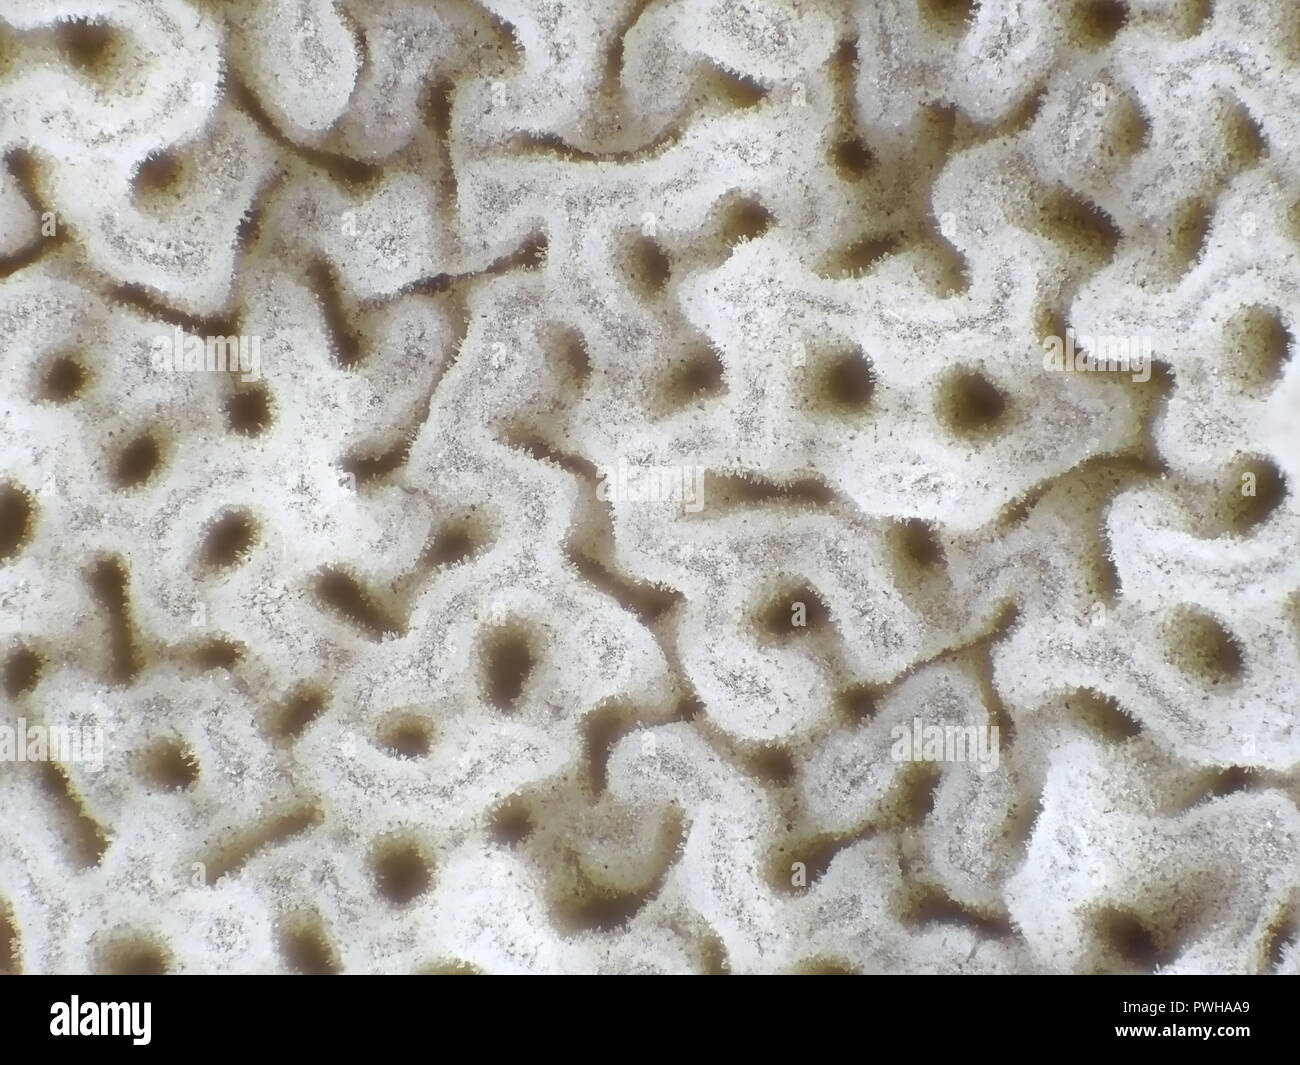 Leichte Aufnahme von bolete Pilz Poren, Sichtfeld ca. 3 mm Breite Stockfoto